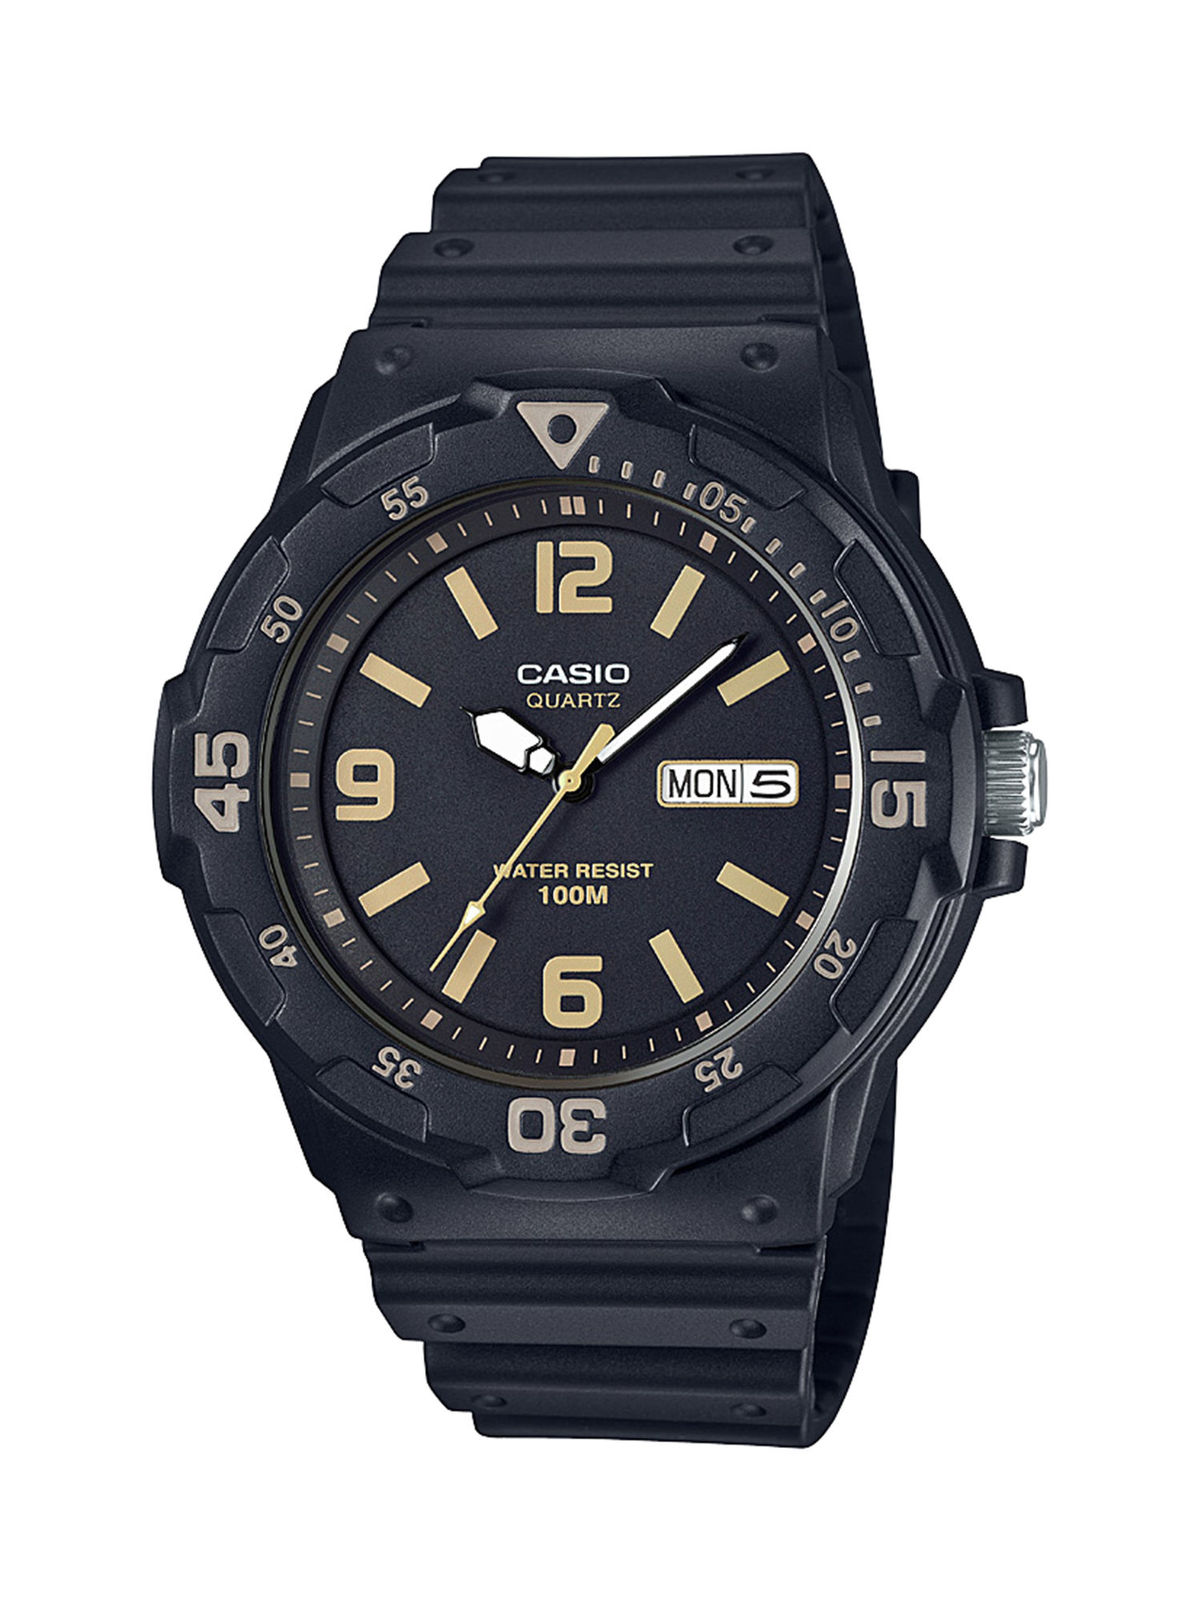 Casio Men's 'Classic' Quartz Resin Casual Watch, Color Black (Model: MRW-200H-1B